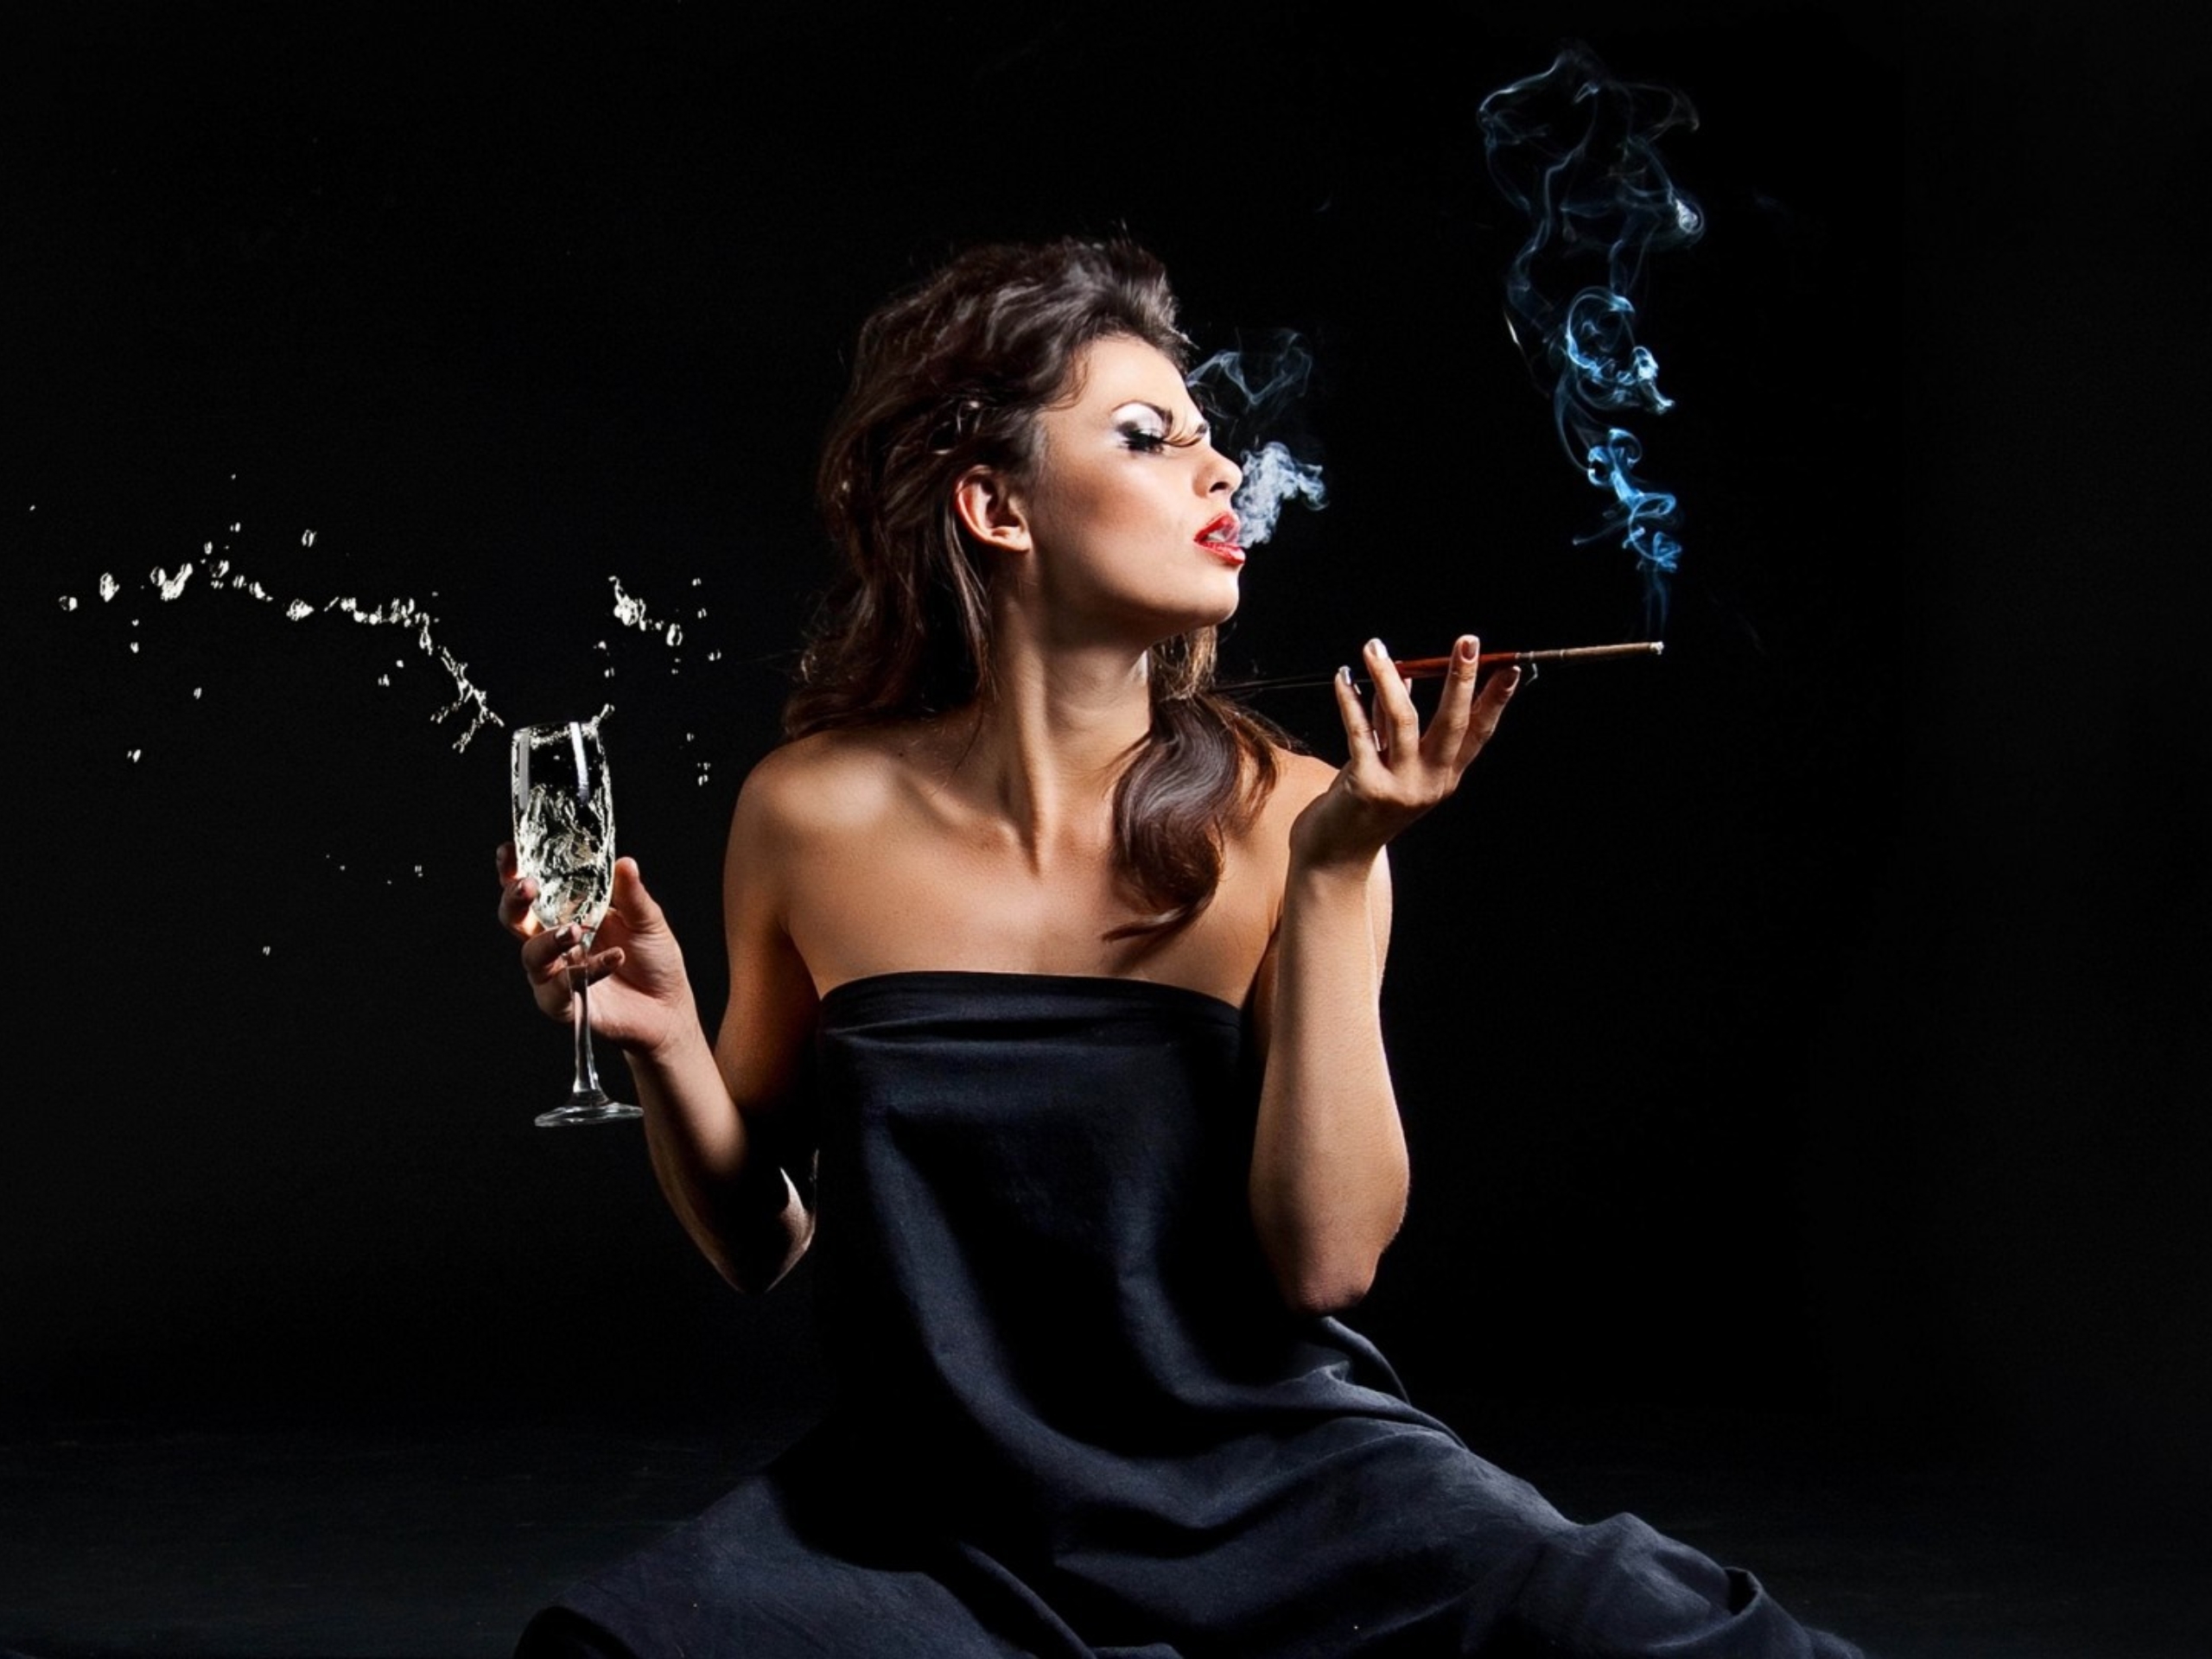 Фото девушки с сигаретой и алкоголем